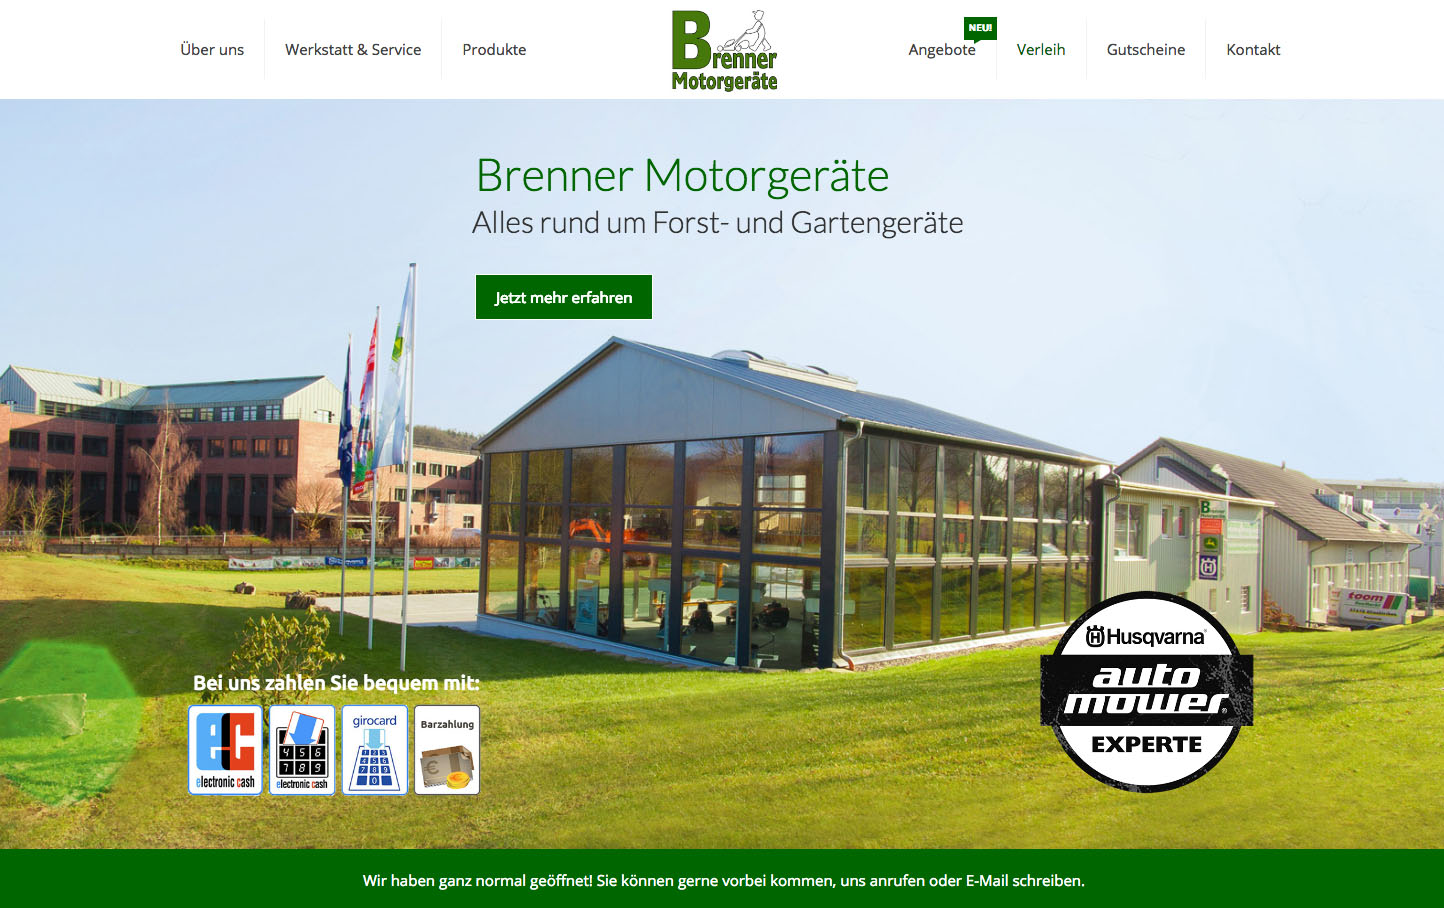 Brenner Motorgeraete Internetseite